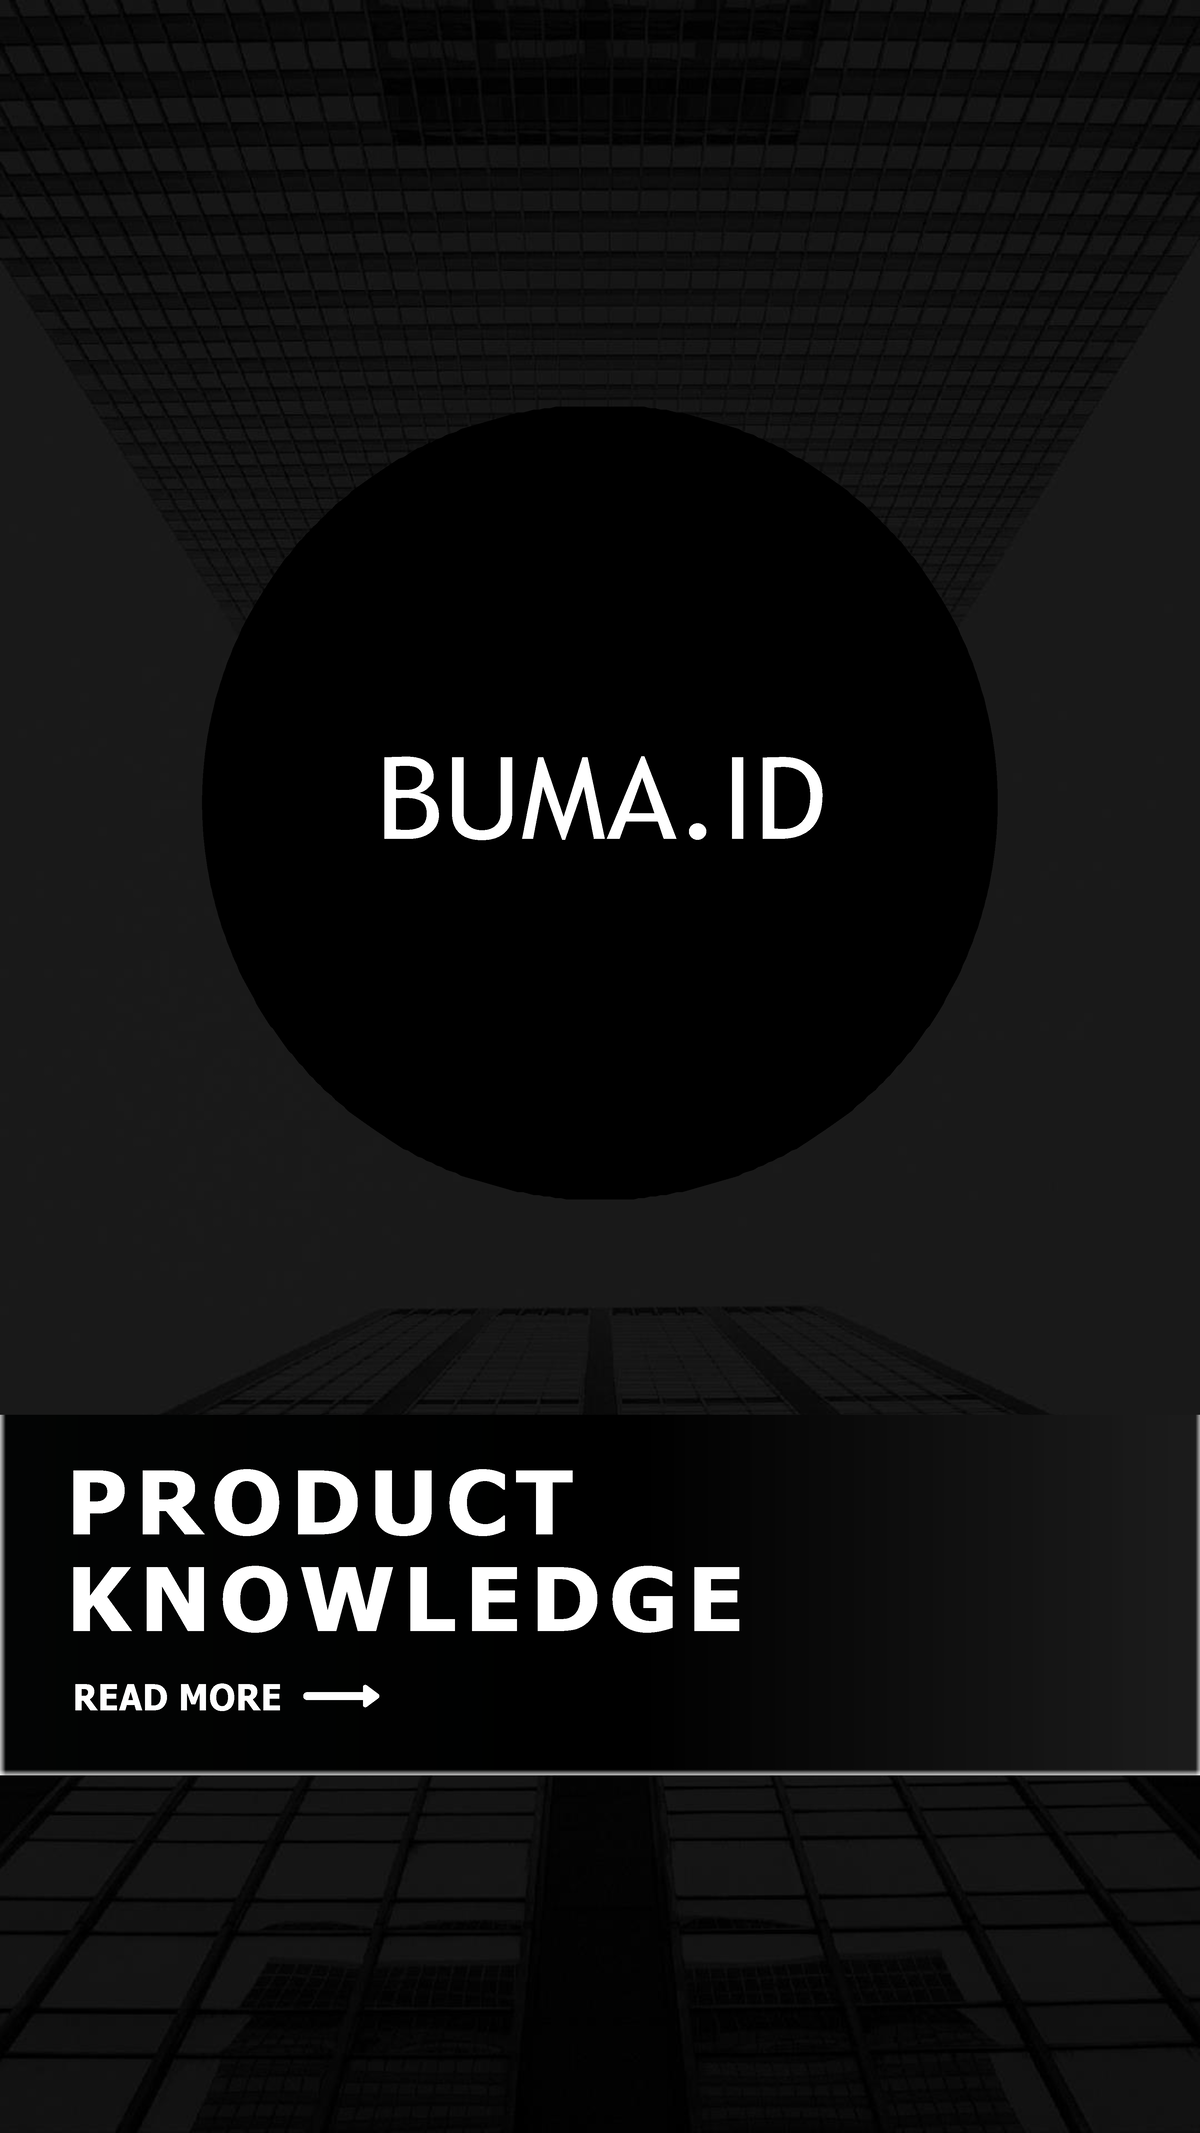 Product Knowledge BUMA - BUMA PRODUCT KNOWLEDGE READ MORE CON T E N T S ...